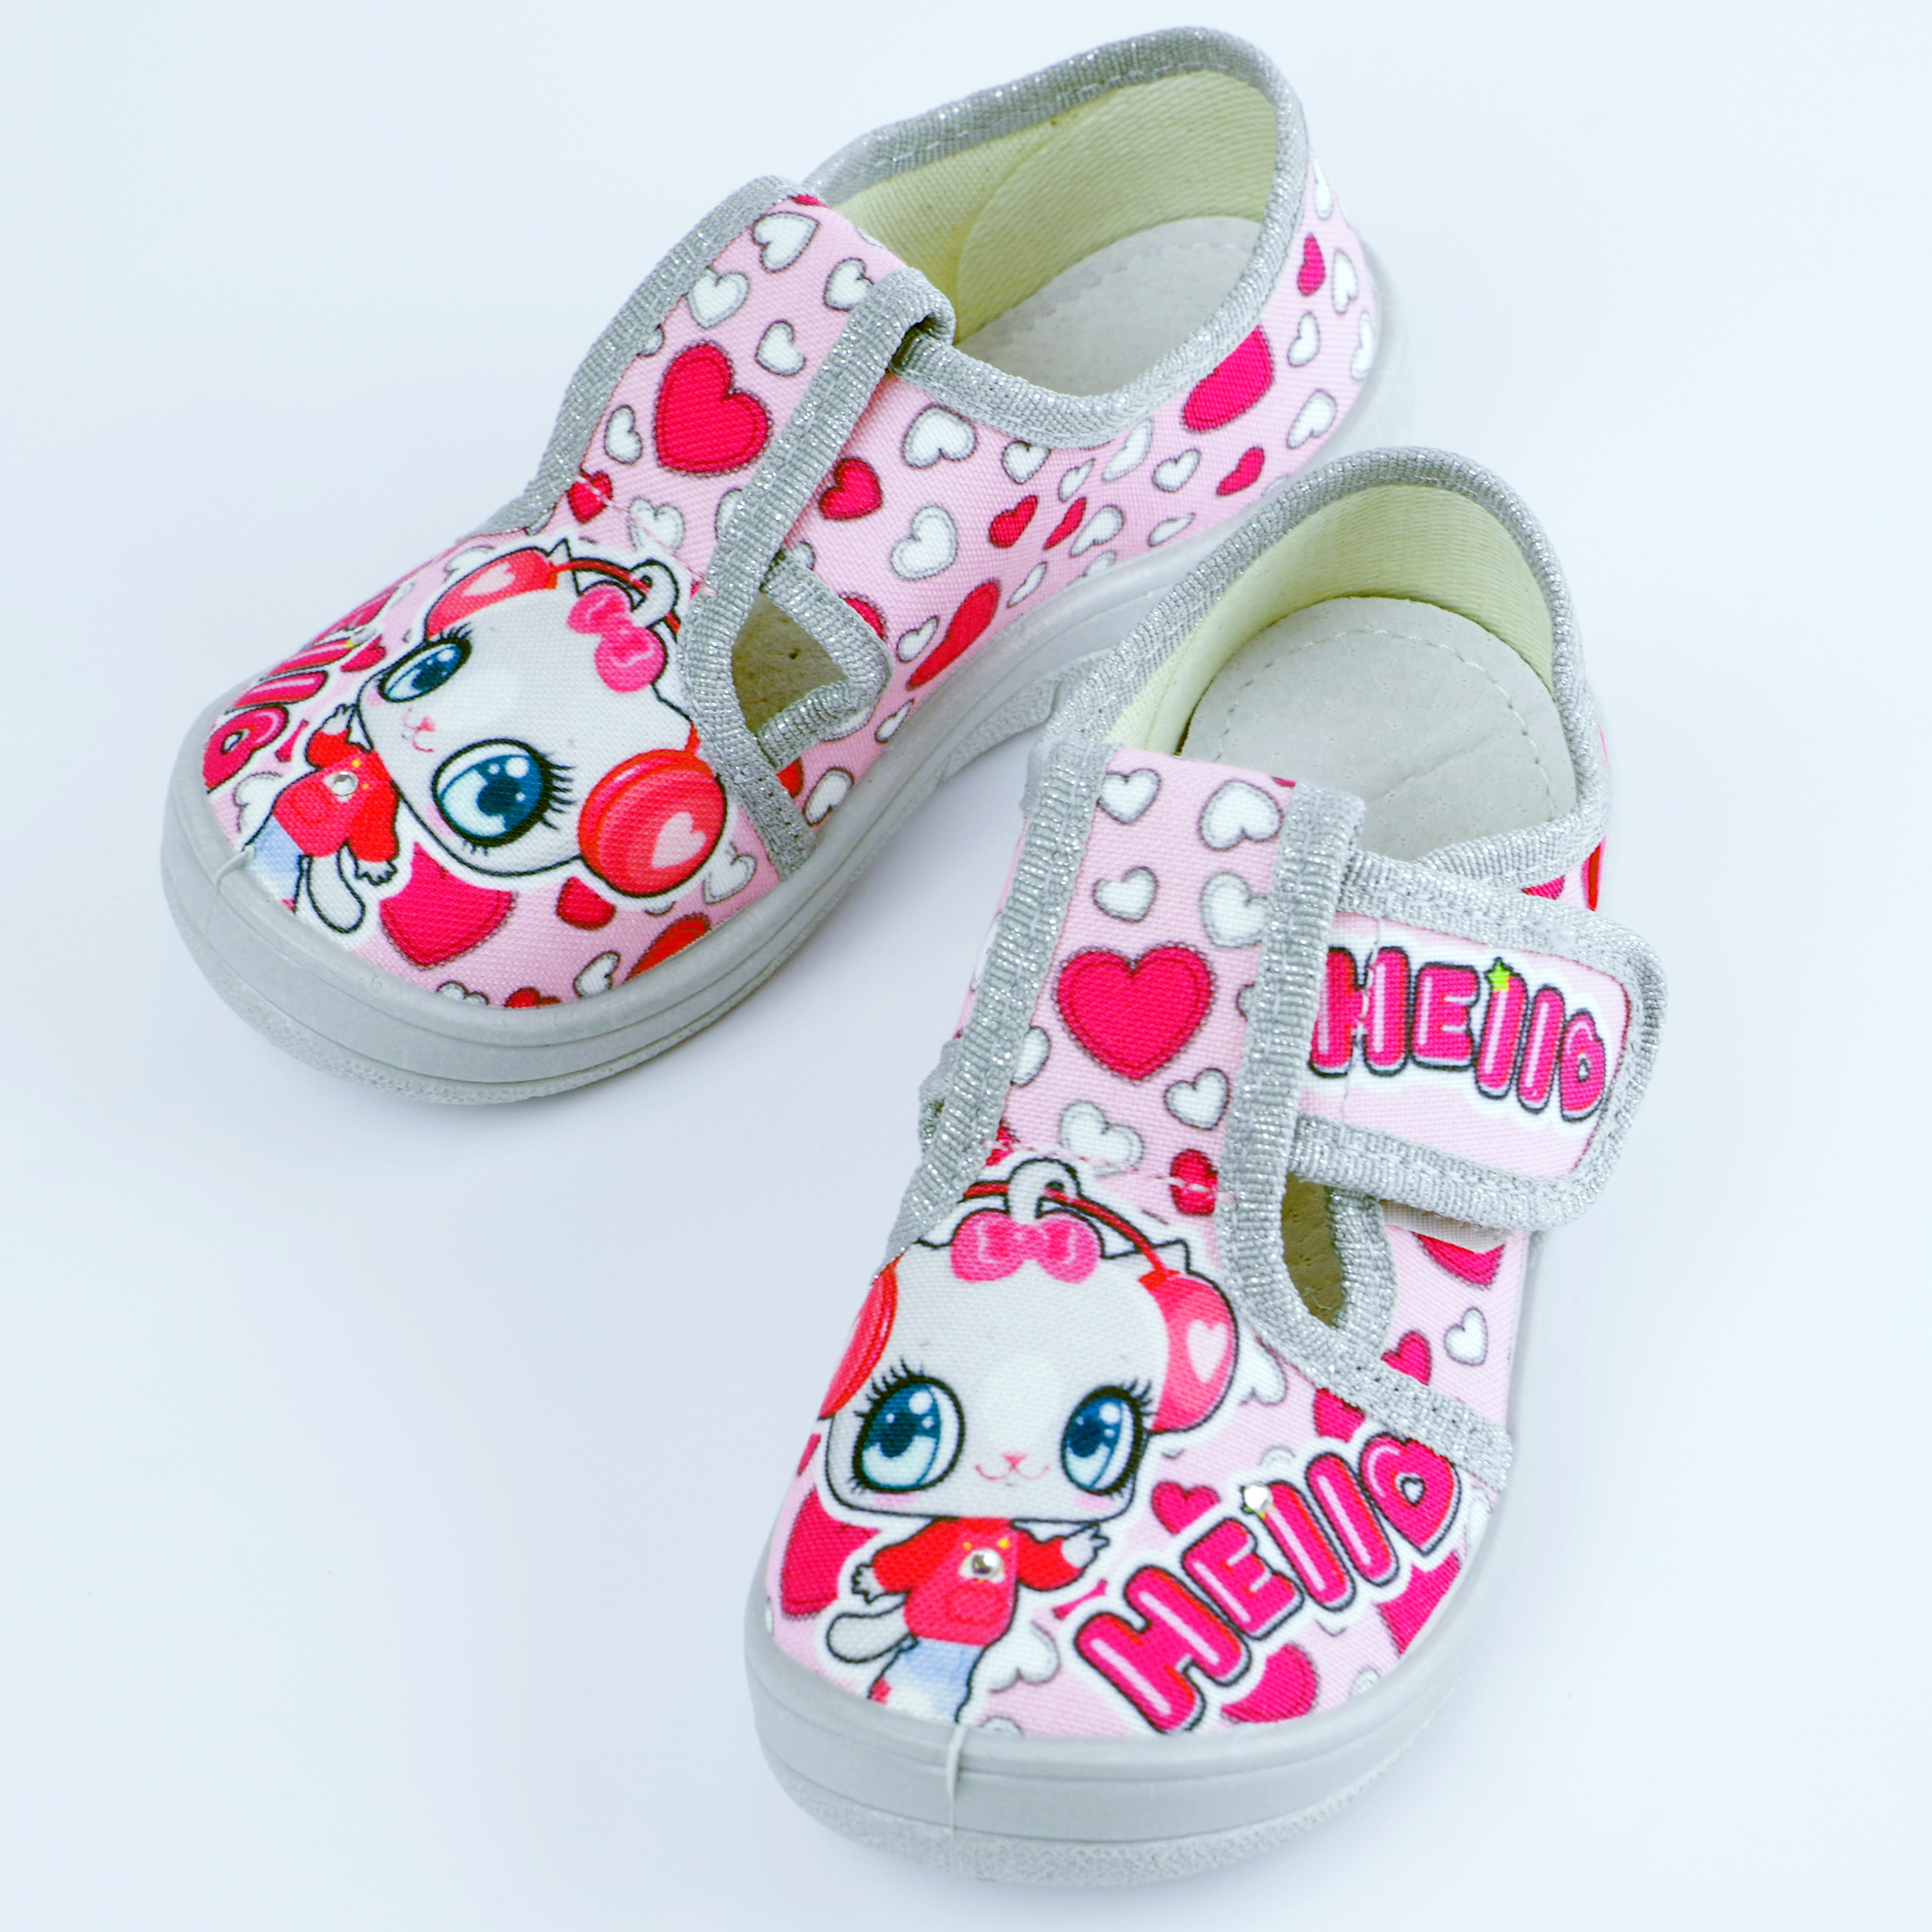 Текстильная обувь для девочек Тапочки Галя Hello (2127) цвет Розовый 24-30 размеры – Sole Kids. Фото 3